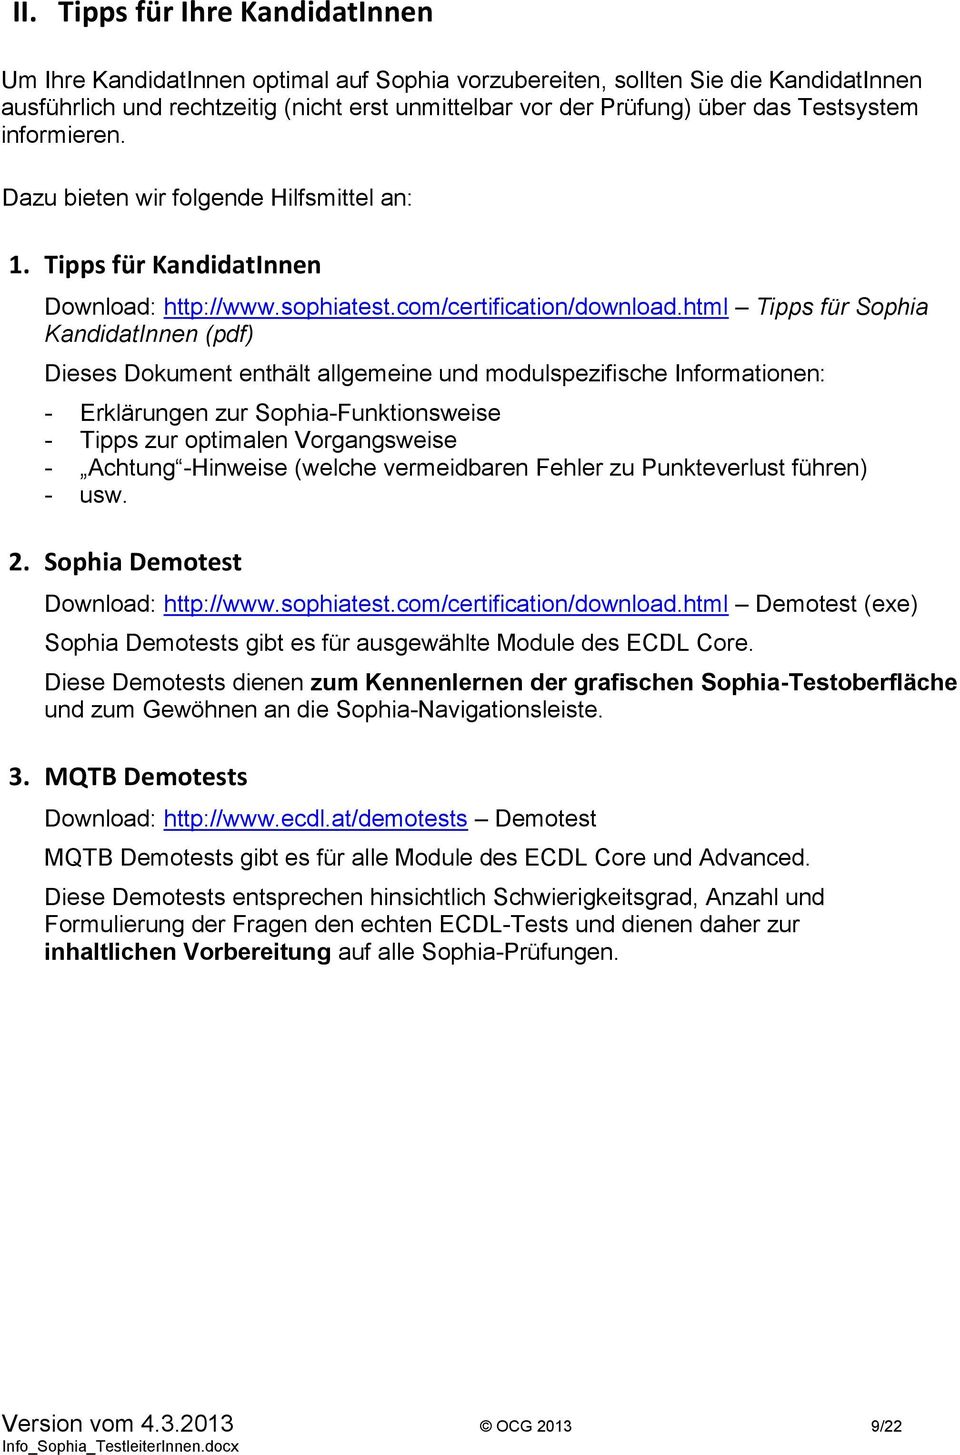 html Tipps für Sophia KandidatInnen (pdf) Dieses Dokument enthält allgemeine und modulspezifische Informationen: - Erklärungen zur Sophia-Funktionsweise - Tipps zur optimalen Vorgangsweise - Achtung